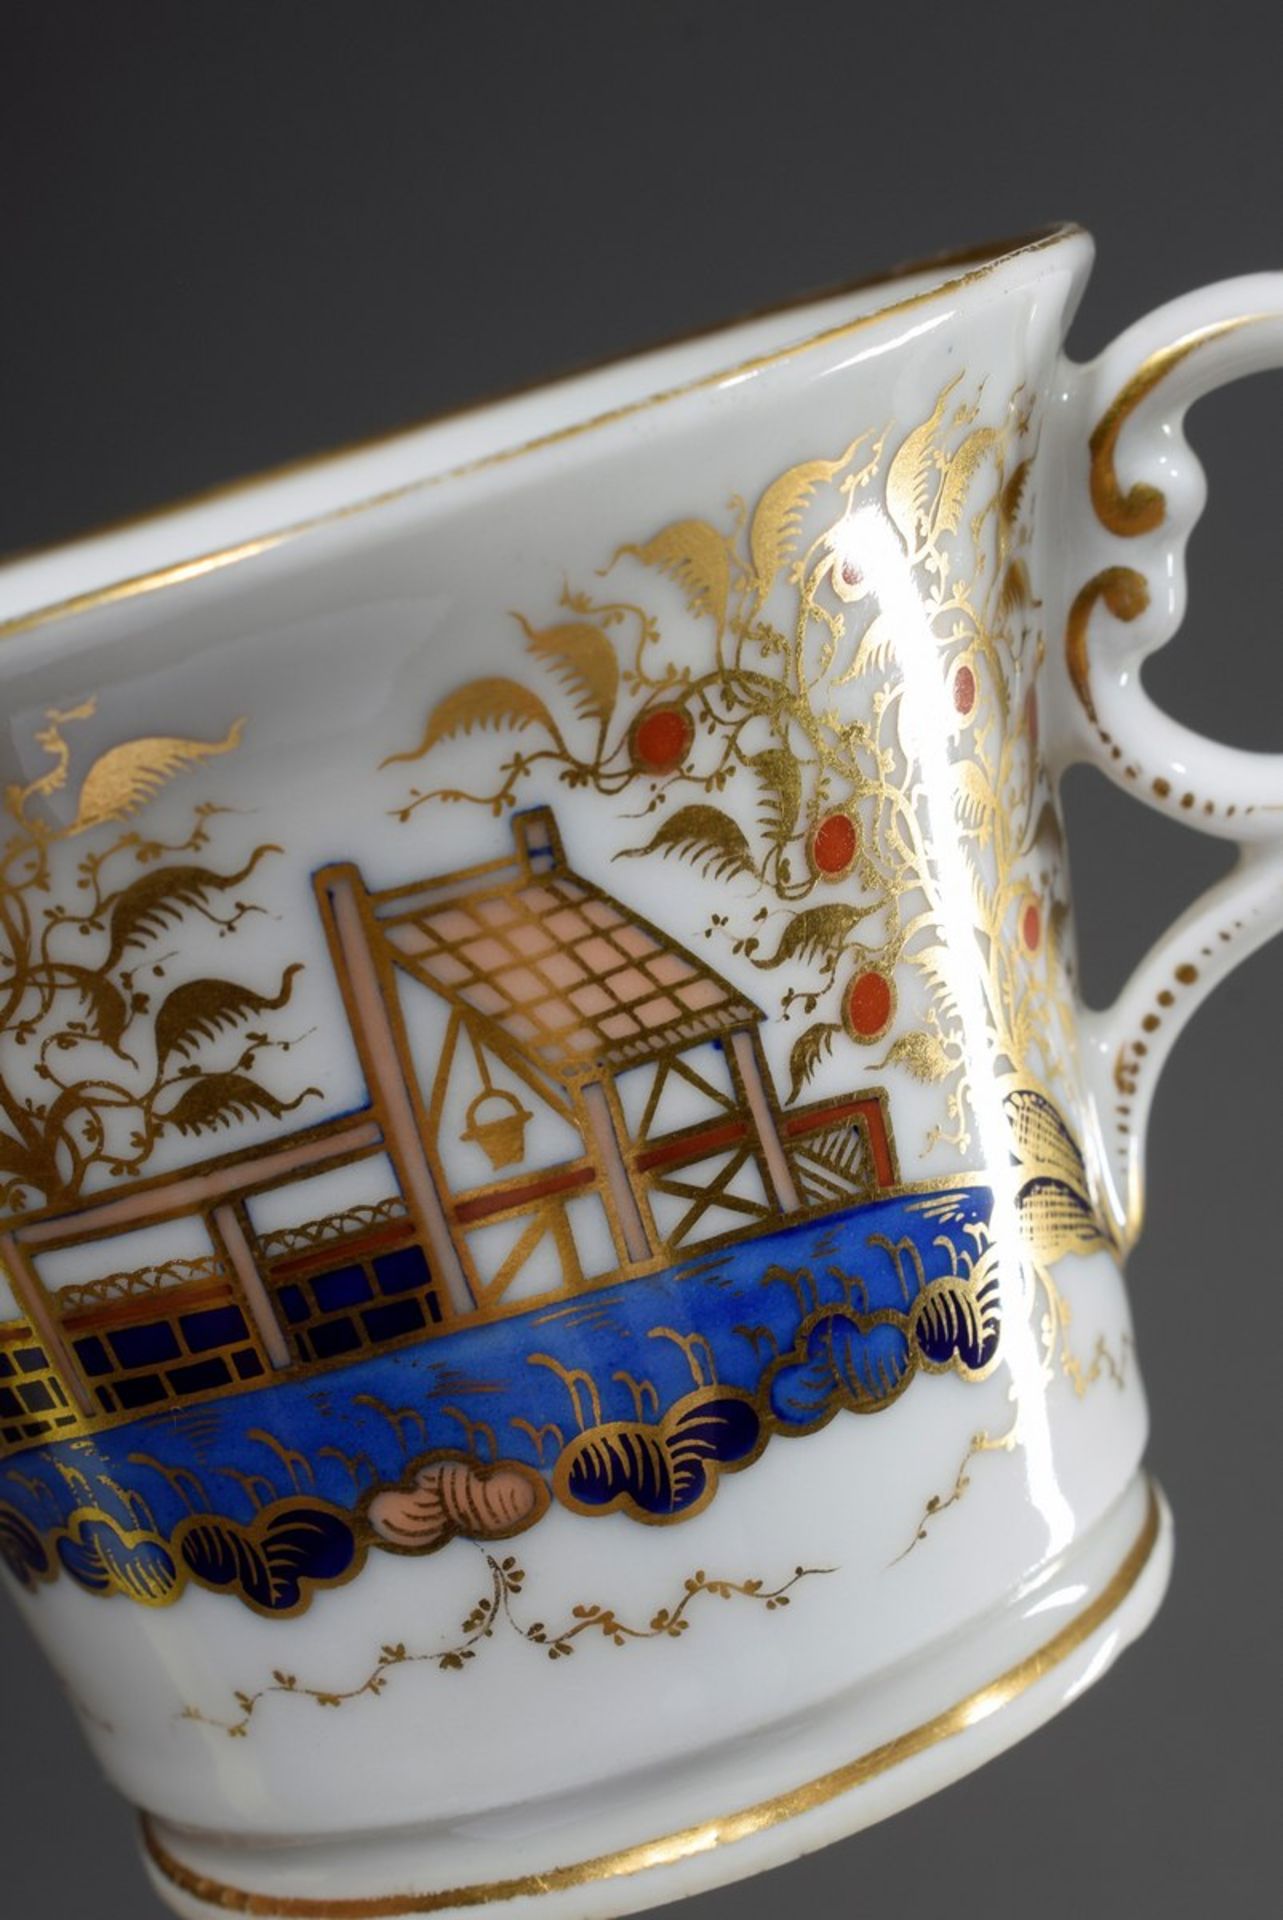 Englische Porzellan Tasse im chinesischen Stil "Landschaft mit Figuren", farbig bemalt, mit - Bild 4 aus 6